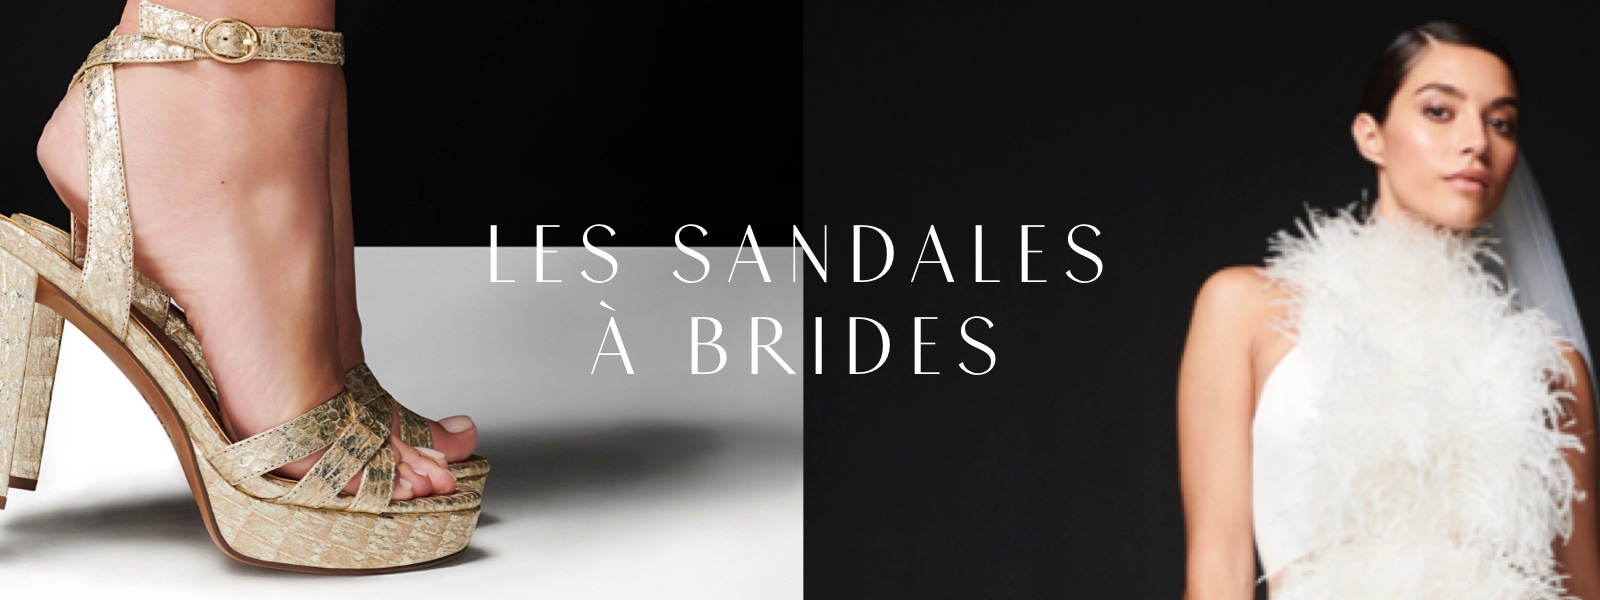 Les sandales à brides